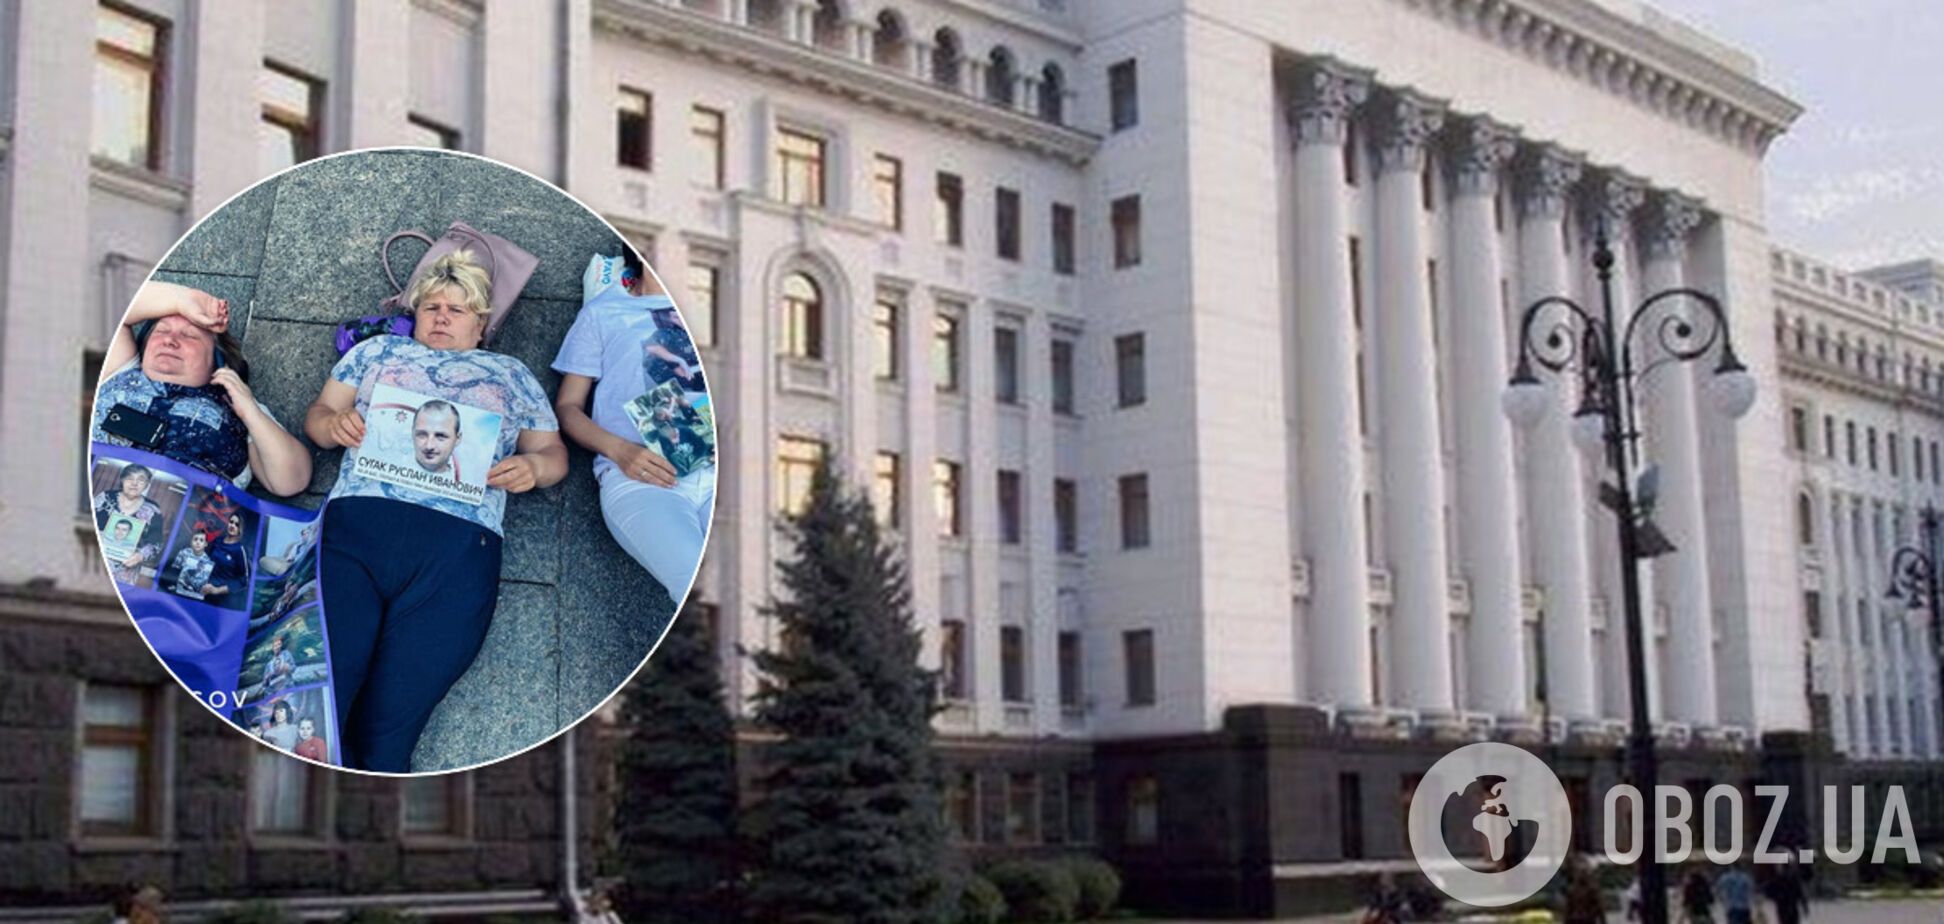 Матери пленных 'Л/ДНР' устроили 'лежачий' пикет под ОП. Фото и видео